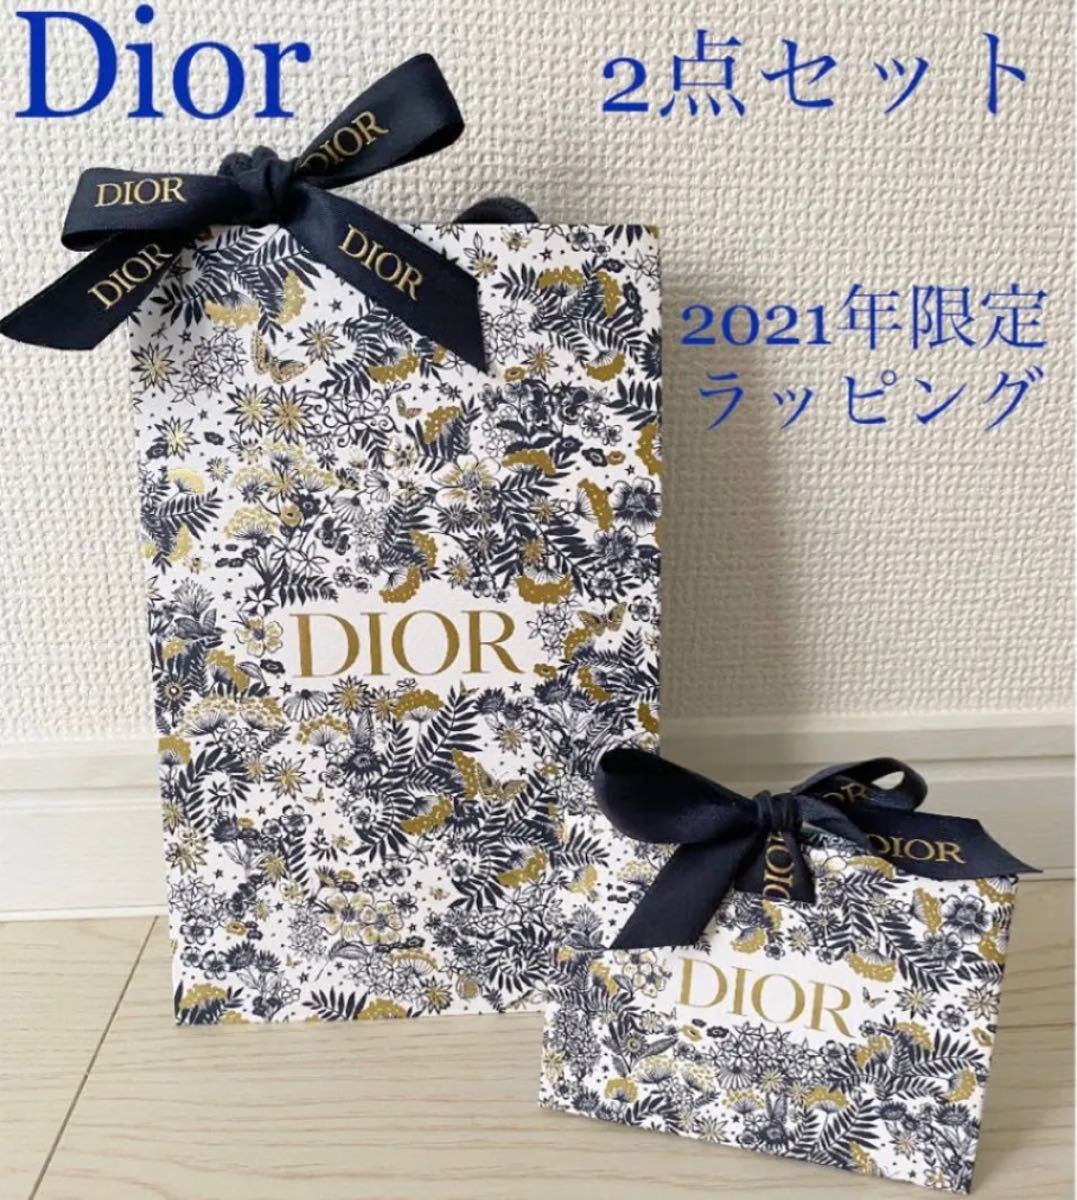 入荷中 Dior ディオール クリスマス限定 2021年 ショッパー リボン付き